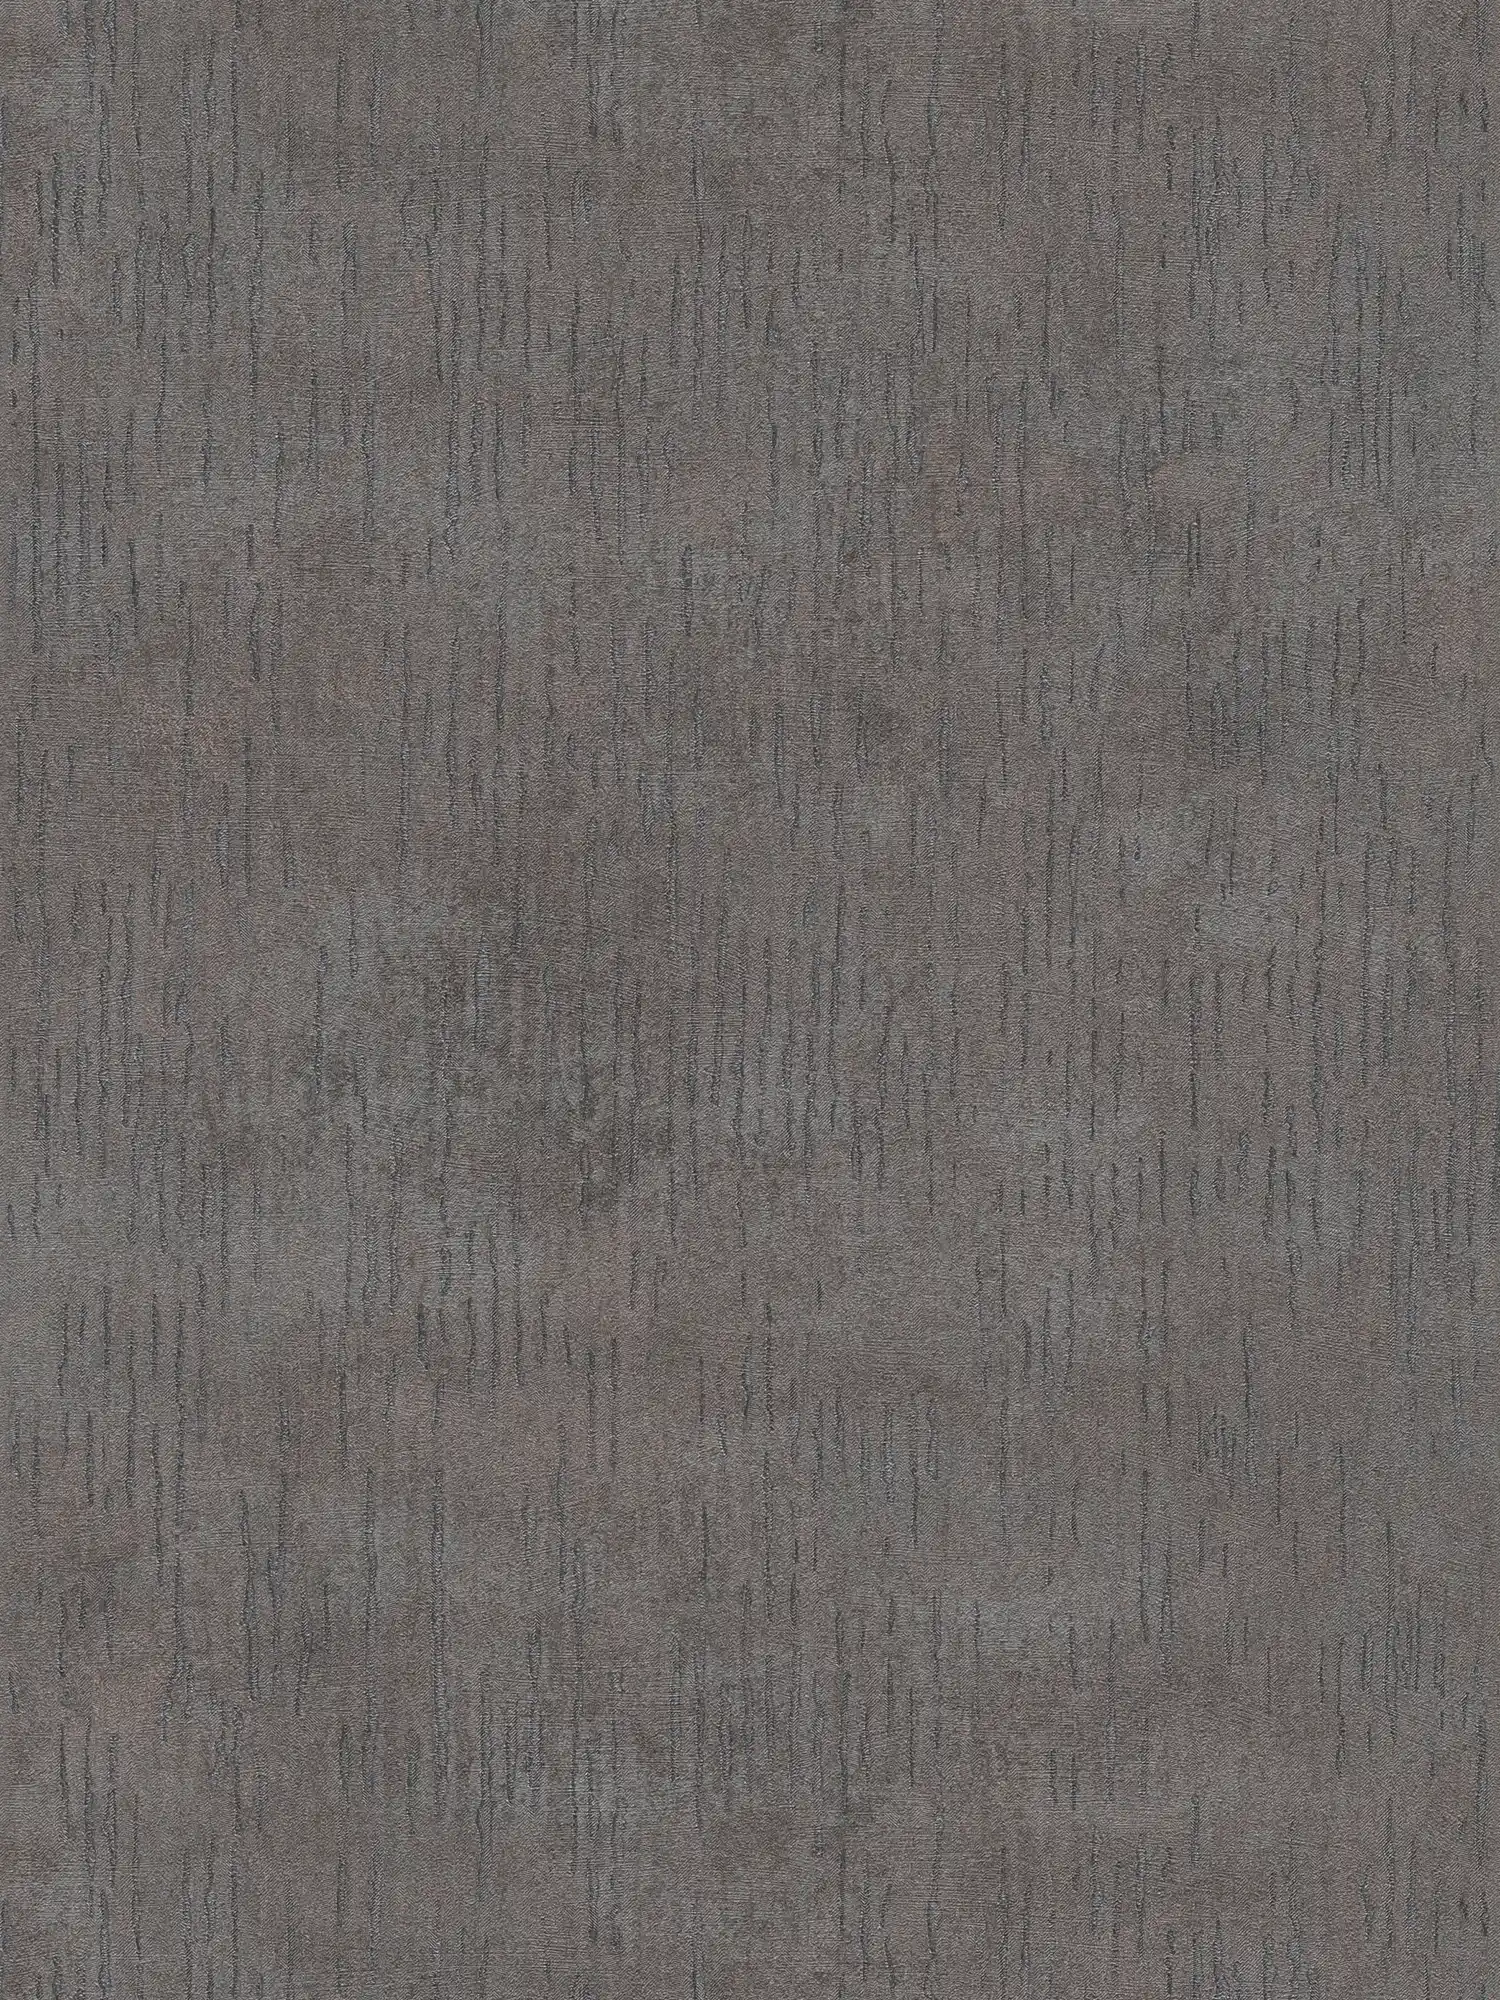 Papier peint uni anthracite avec aspect métallisé - gris, métallisé, noir
